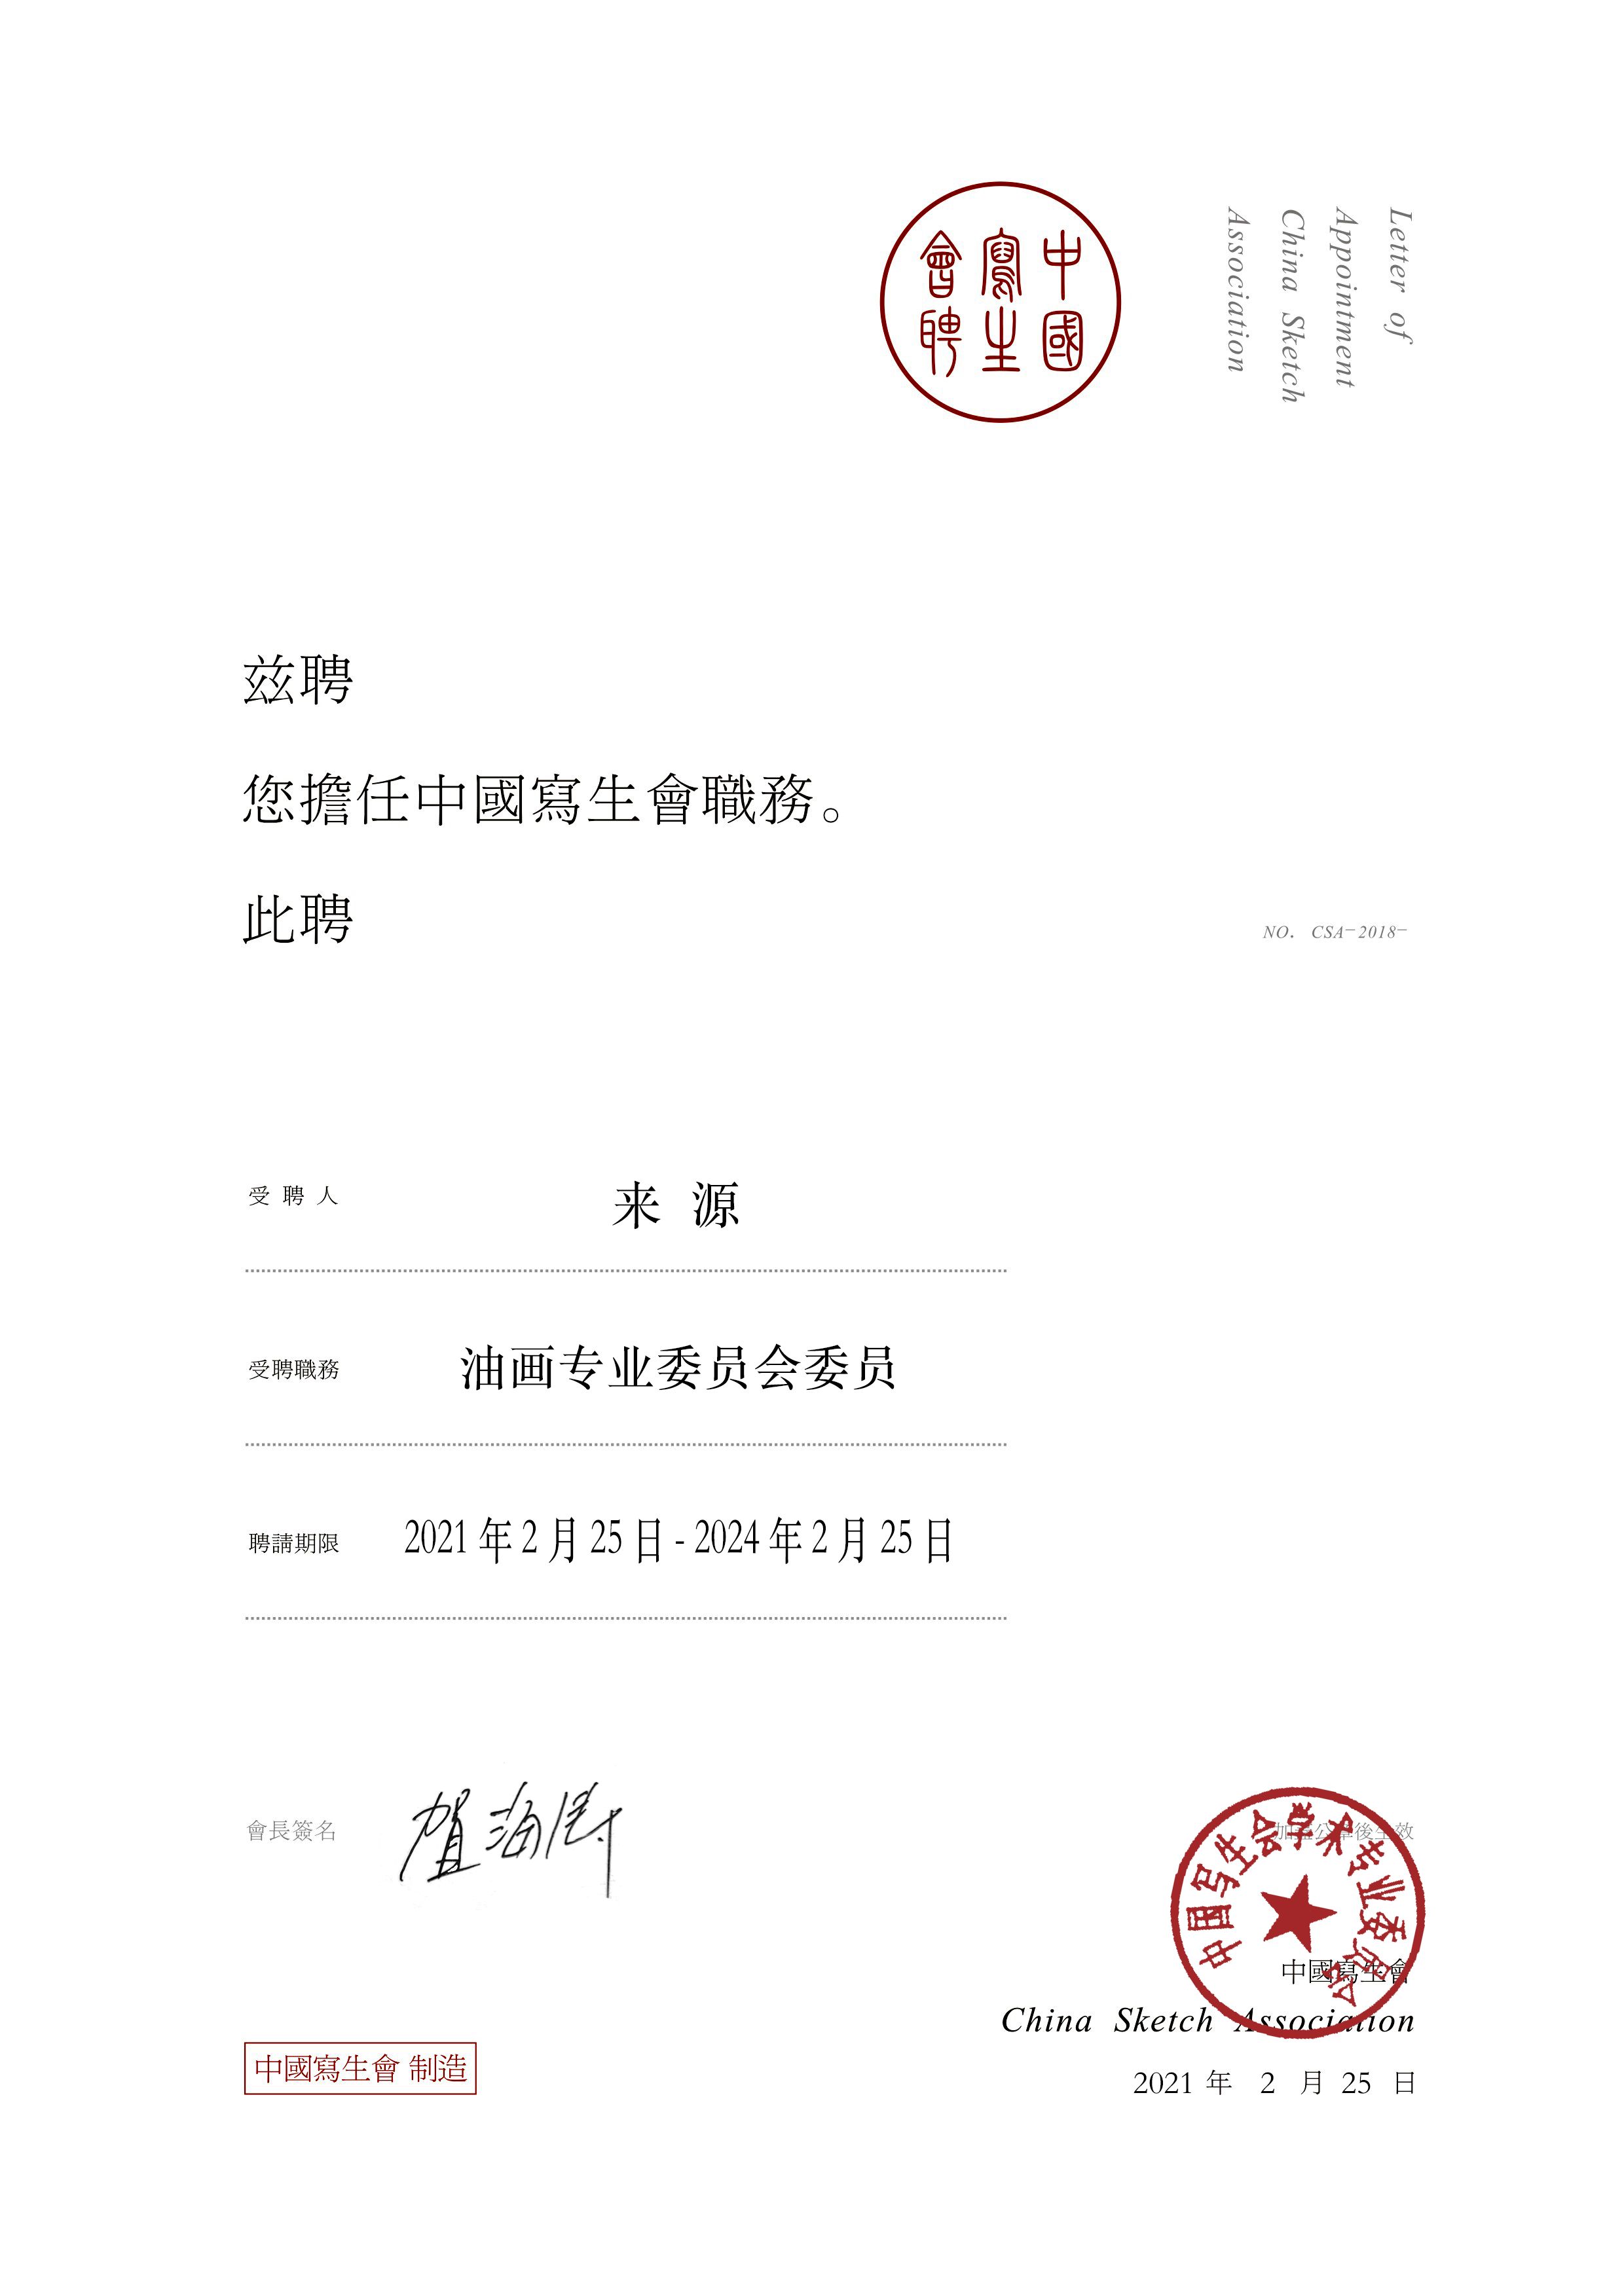 陈燕菲女士、来源先生、于明先生、庄重先生接受中国写生会油画专业主任委员会聘书